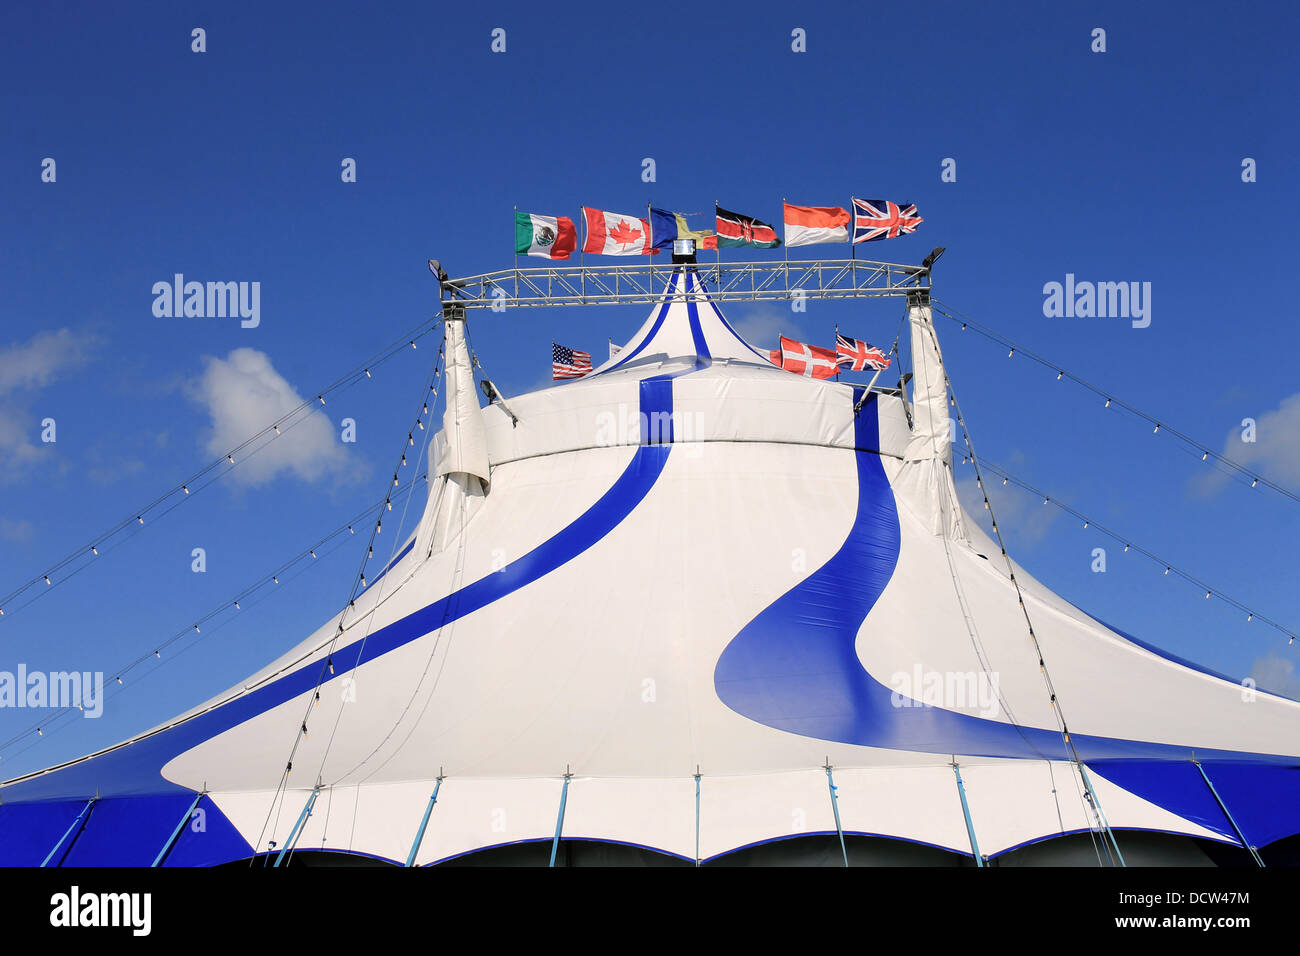 El exterior del circo carpa big top, azul y blanco. Foto de stock